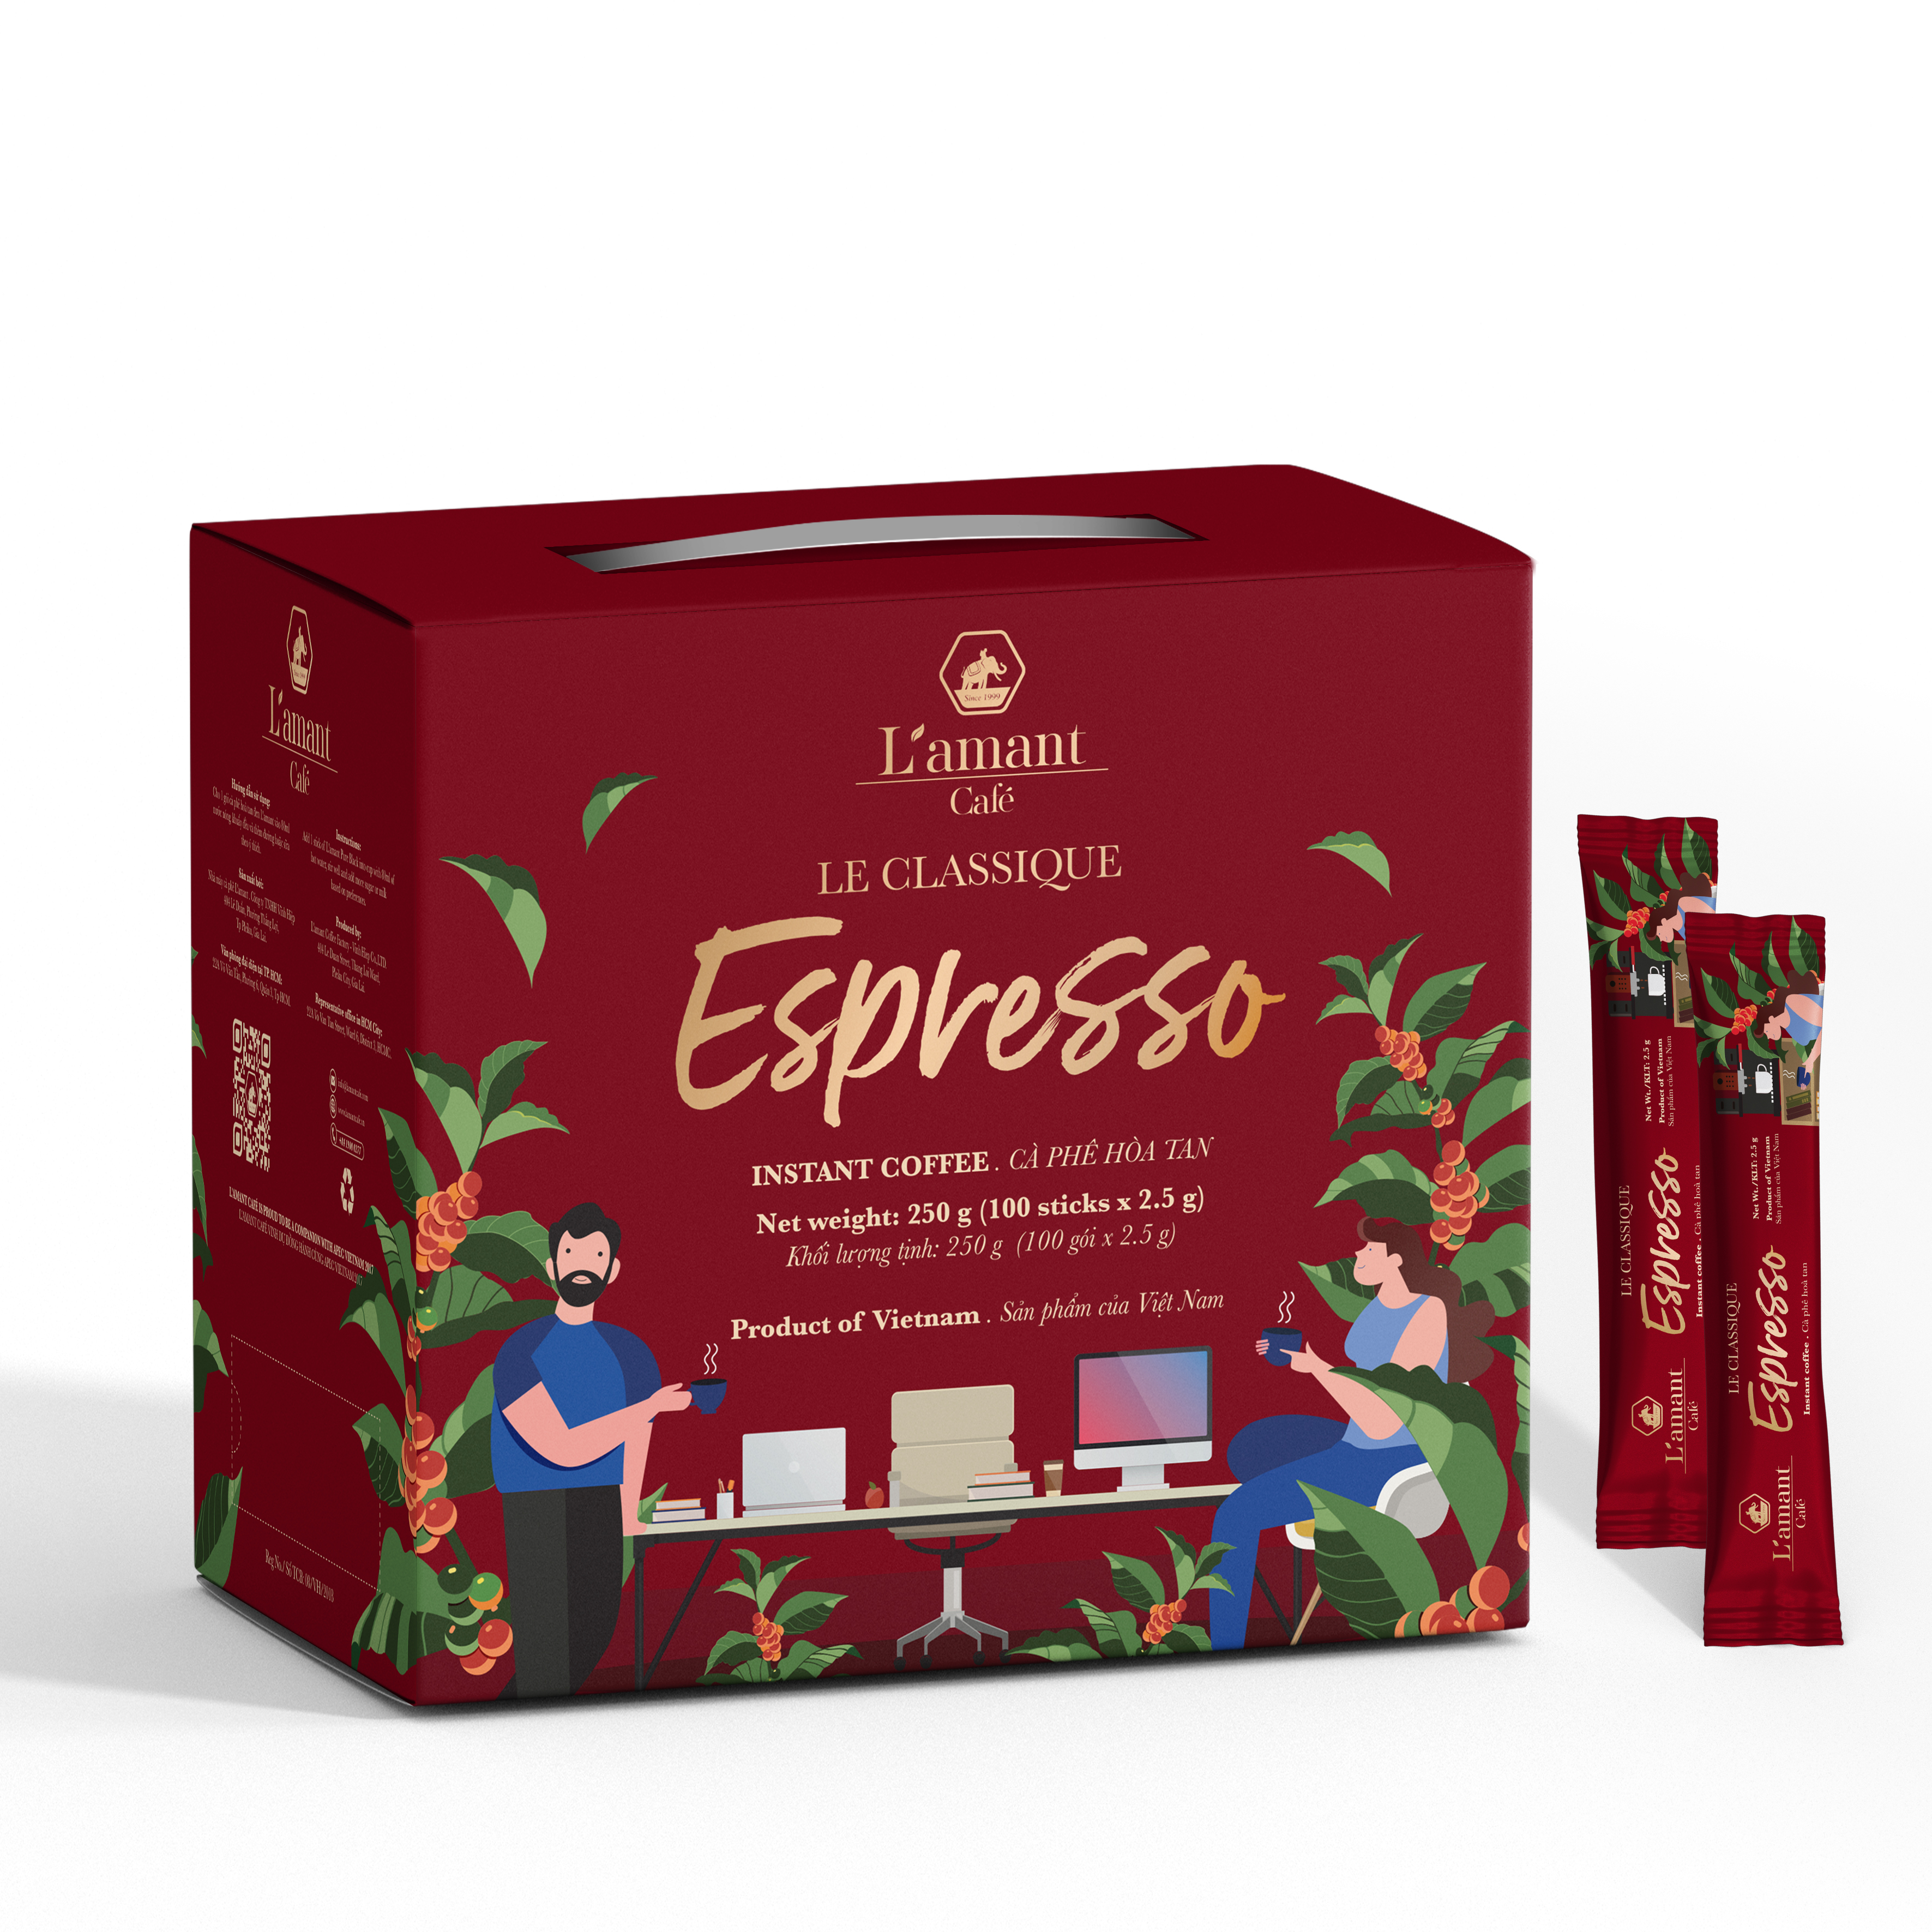 Cà phê hòa tan đen L'amant Espresso nguyên chất thơm ngon(Hộp 100 gói x 2,5gr)